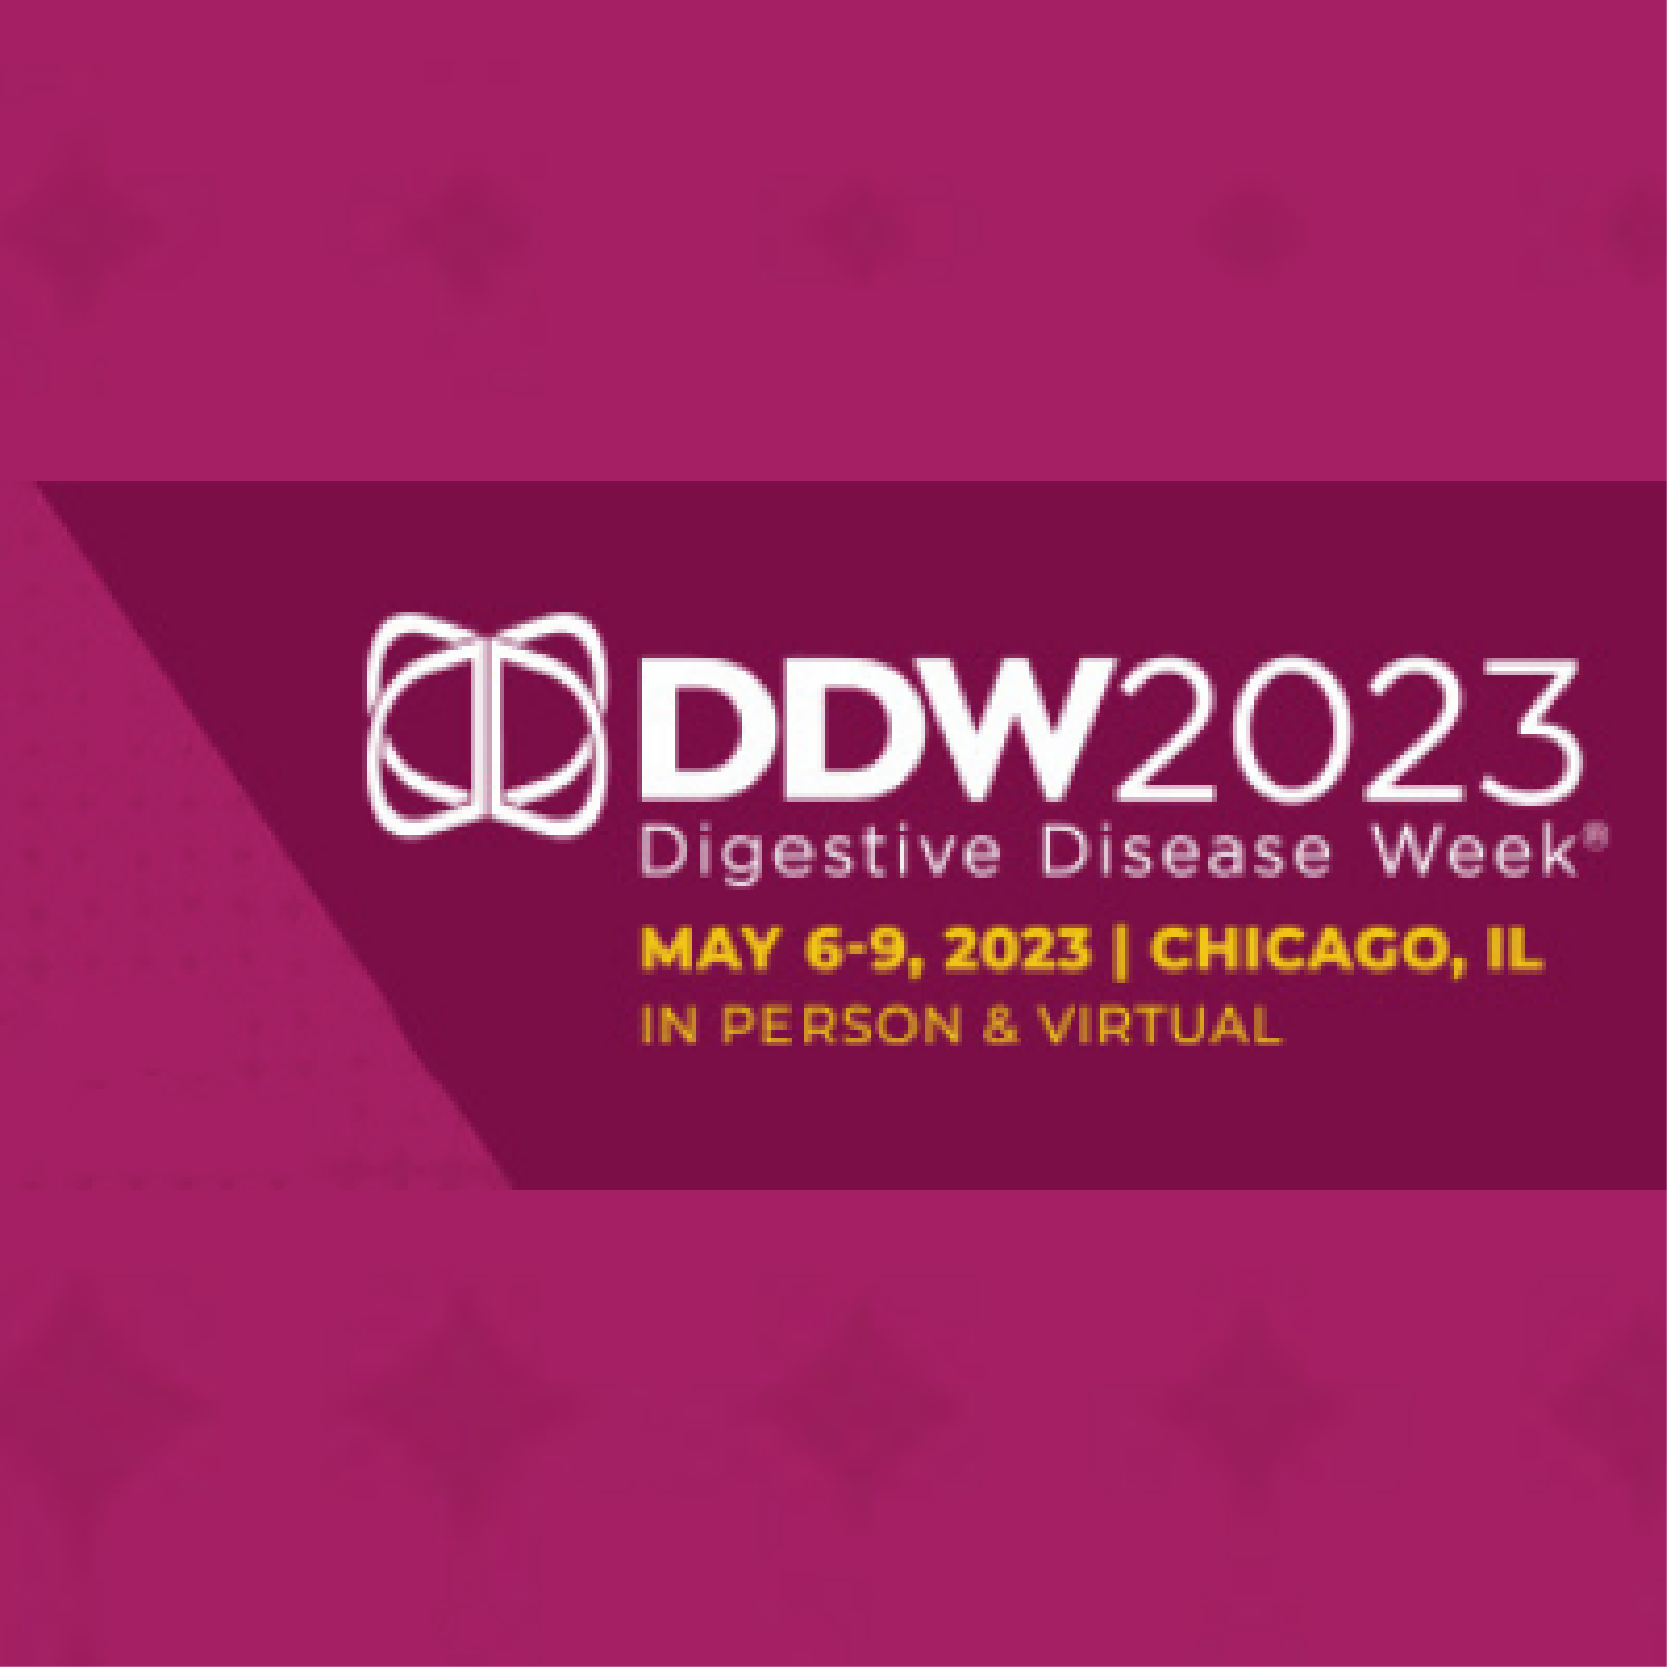 Medflixs Digestive Disease Week DDW 2023